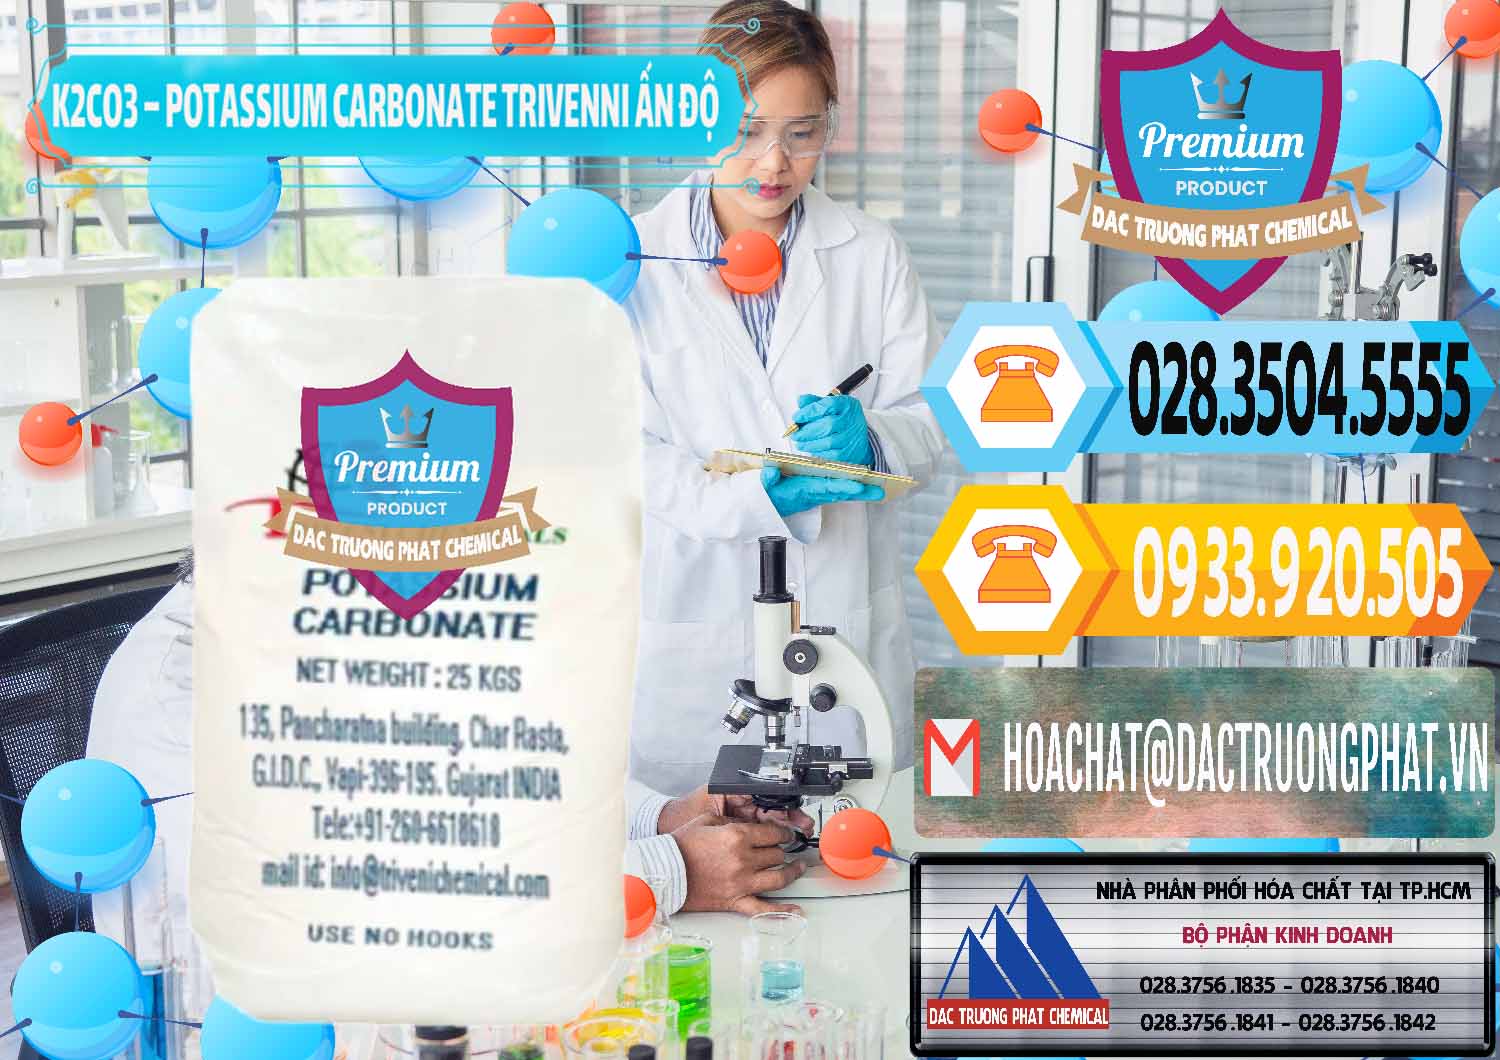 Cty chuyên nhập khẩu và bán K2Co3 – Potassium Carbonate Trivenni Ấn Độ India - 0473 - Đơn vị chuyên nhập khẩu - phân phối hóa chất tại TP.HCM - hoachattayrua.net